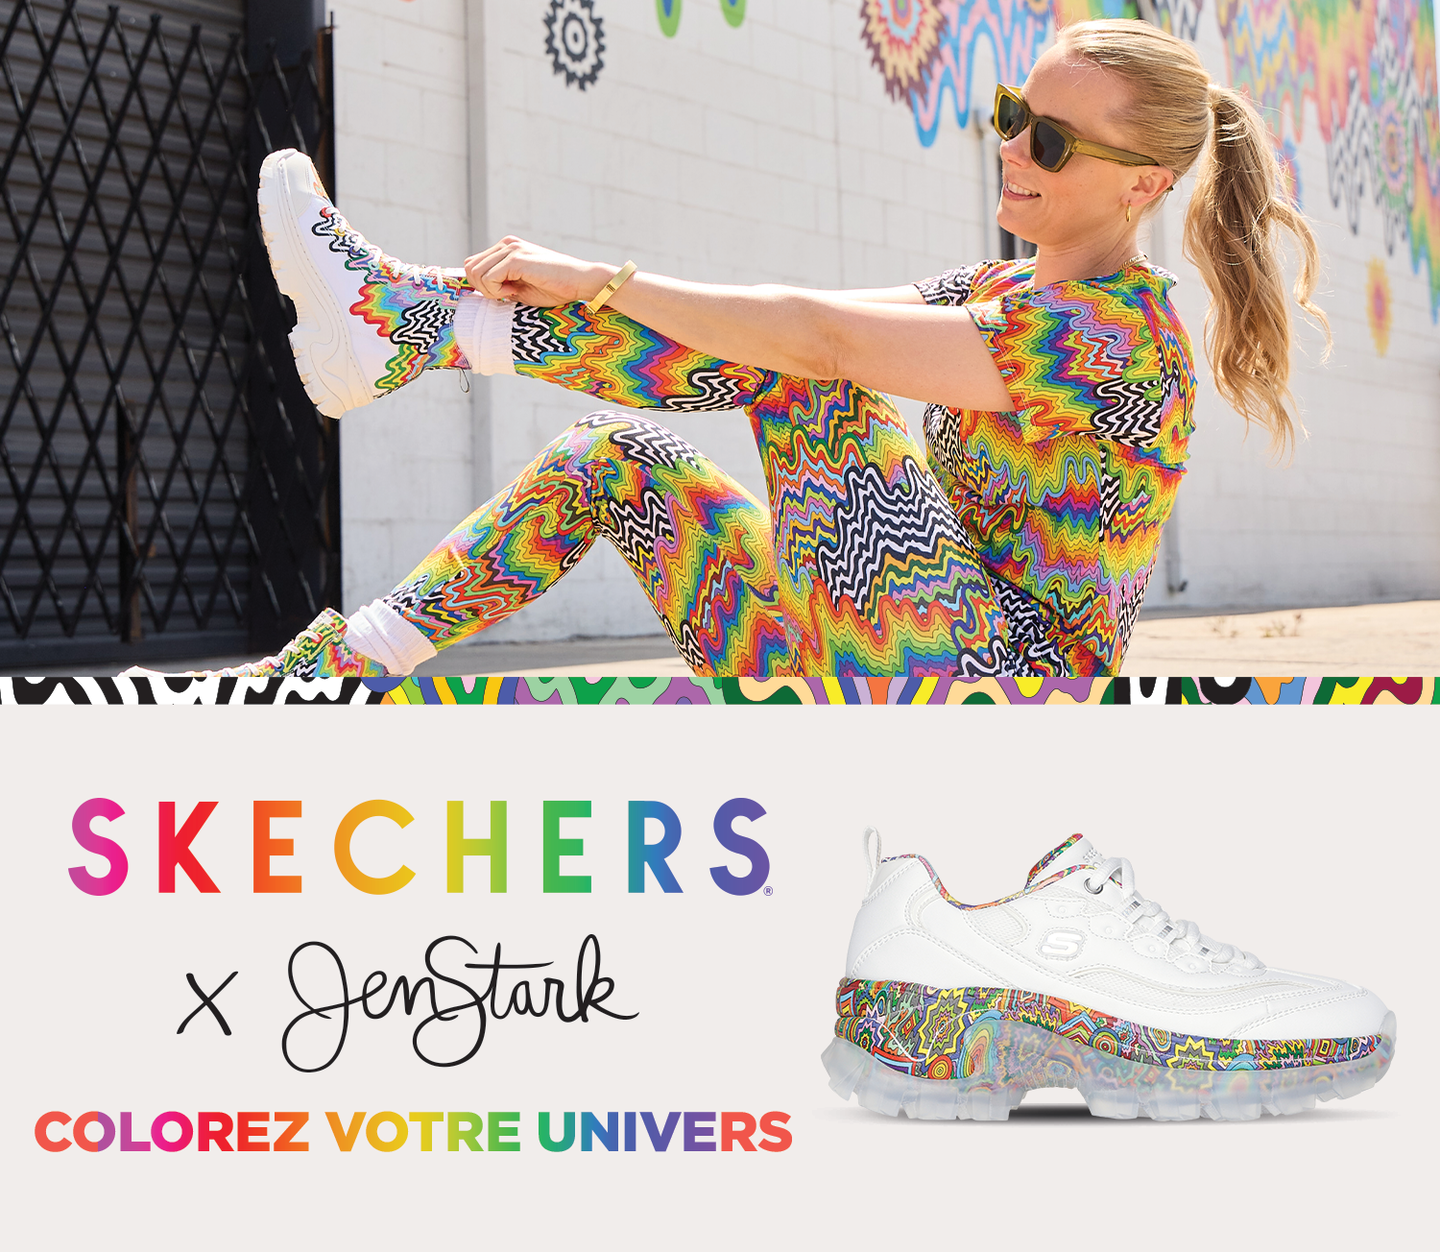 Skechers x Jen stark - Shop Now